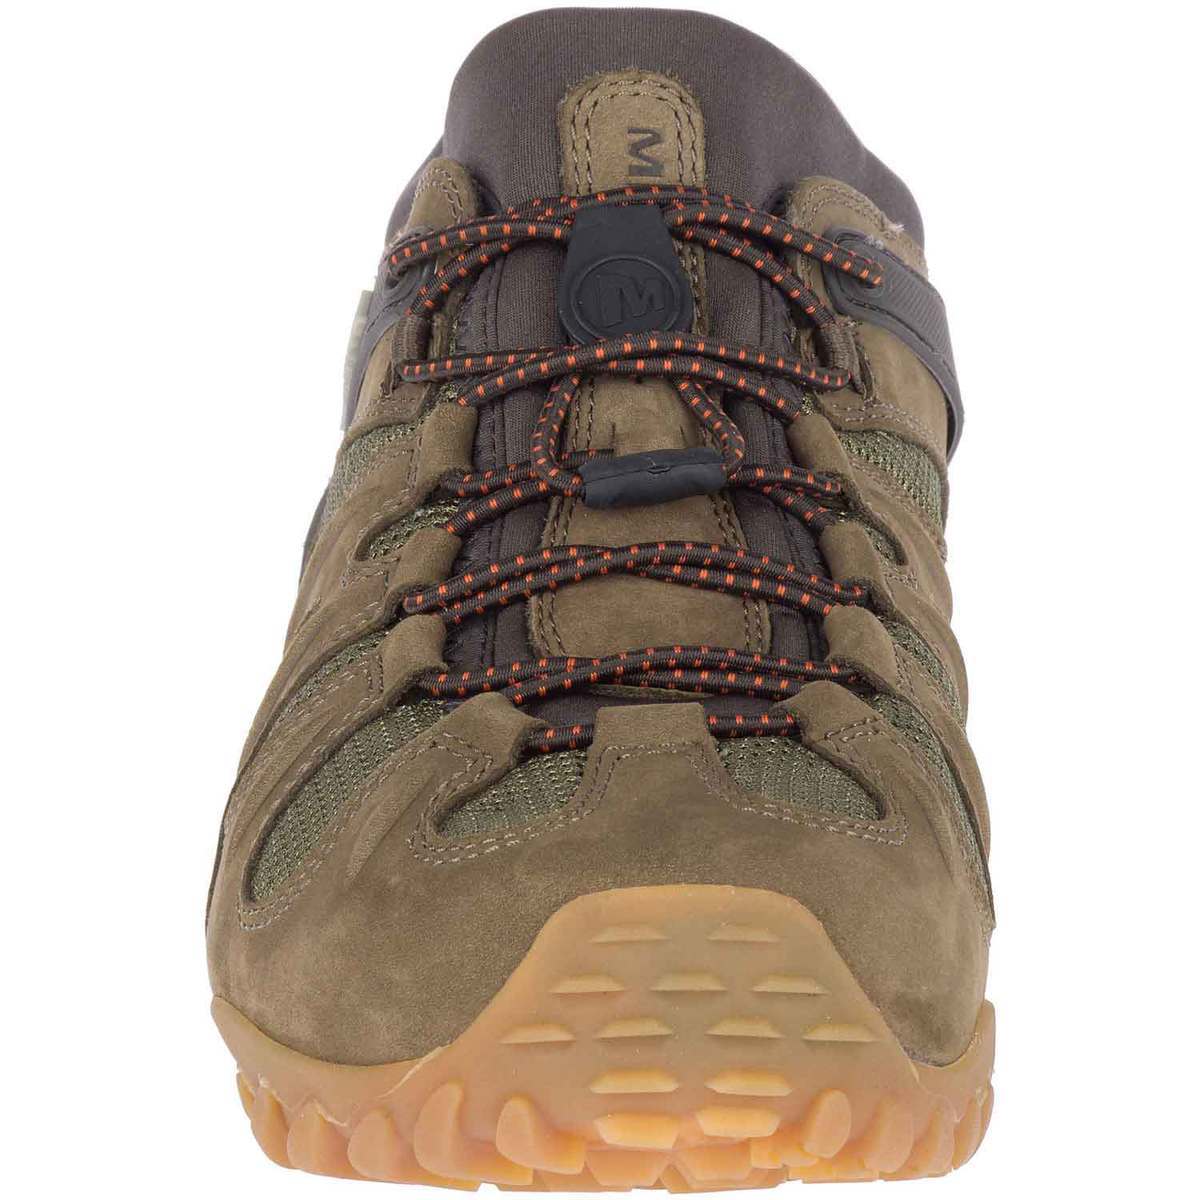 Merrell Men's Chameleon 8 Low Hiking Shoes - Olive - Size 10 - Olive 10 ...